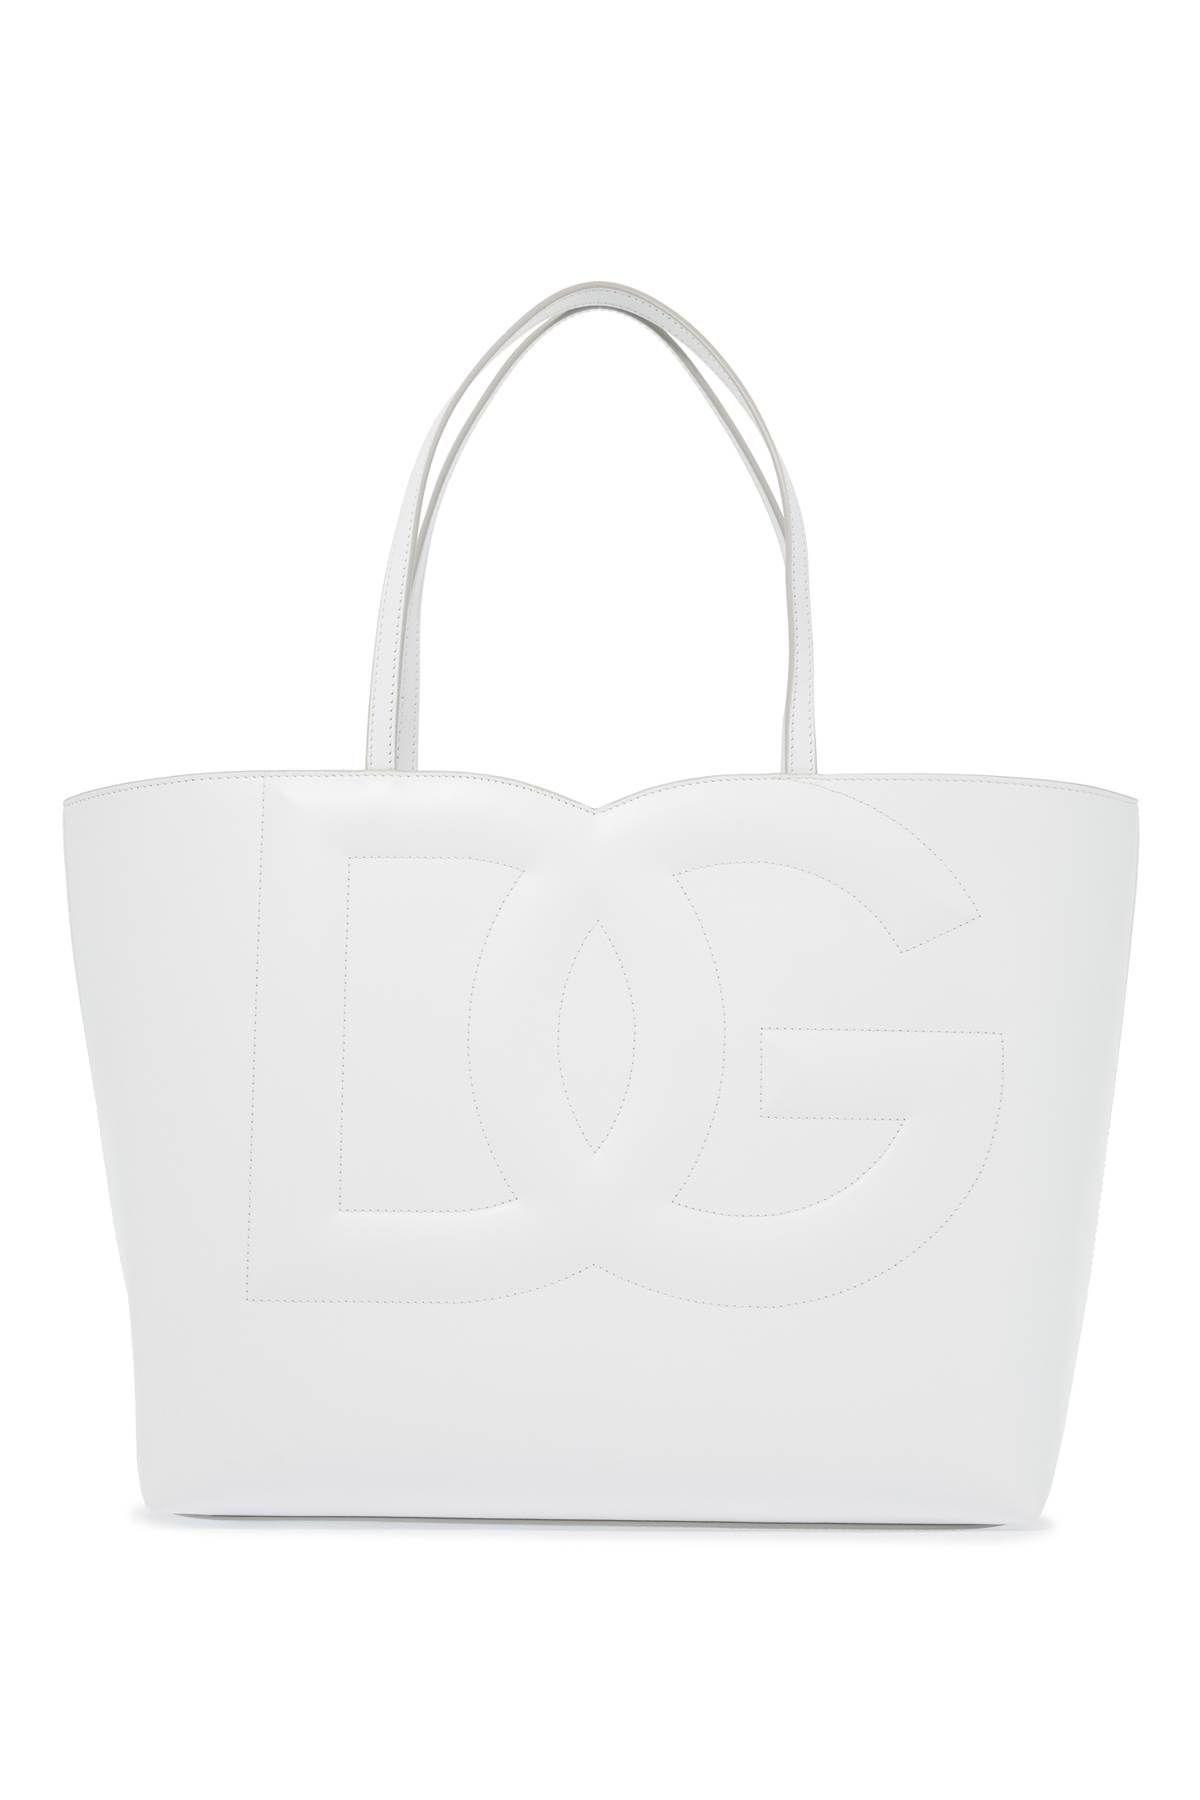 Dolce & Gabbana Dg Logo Tote Bag In White